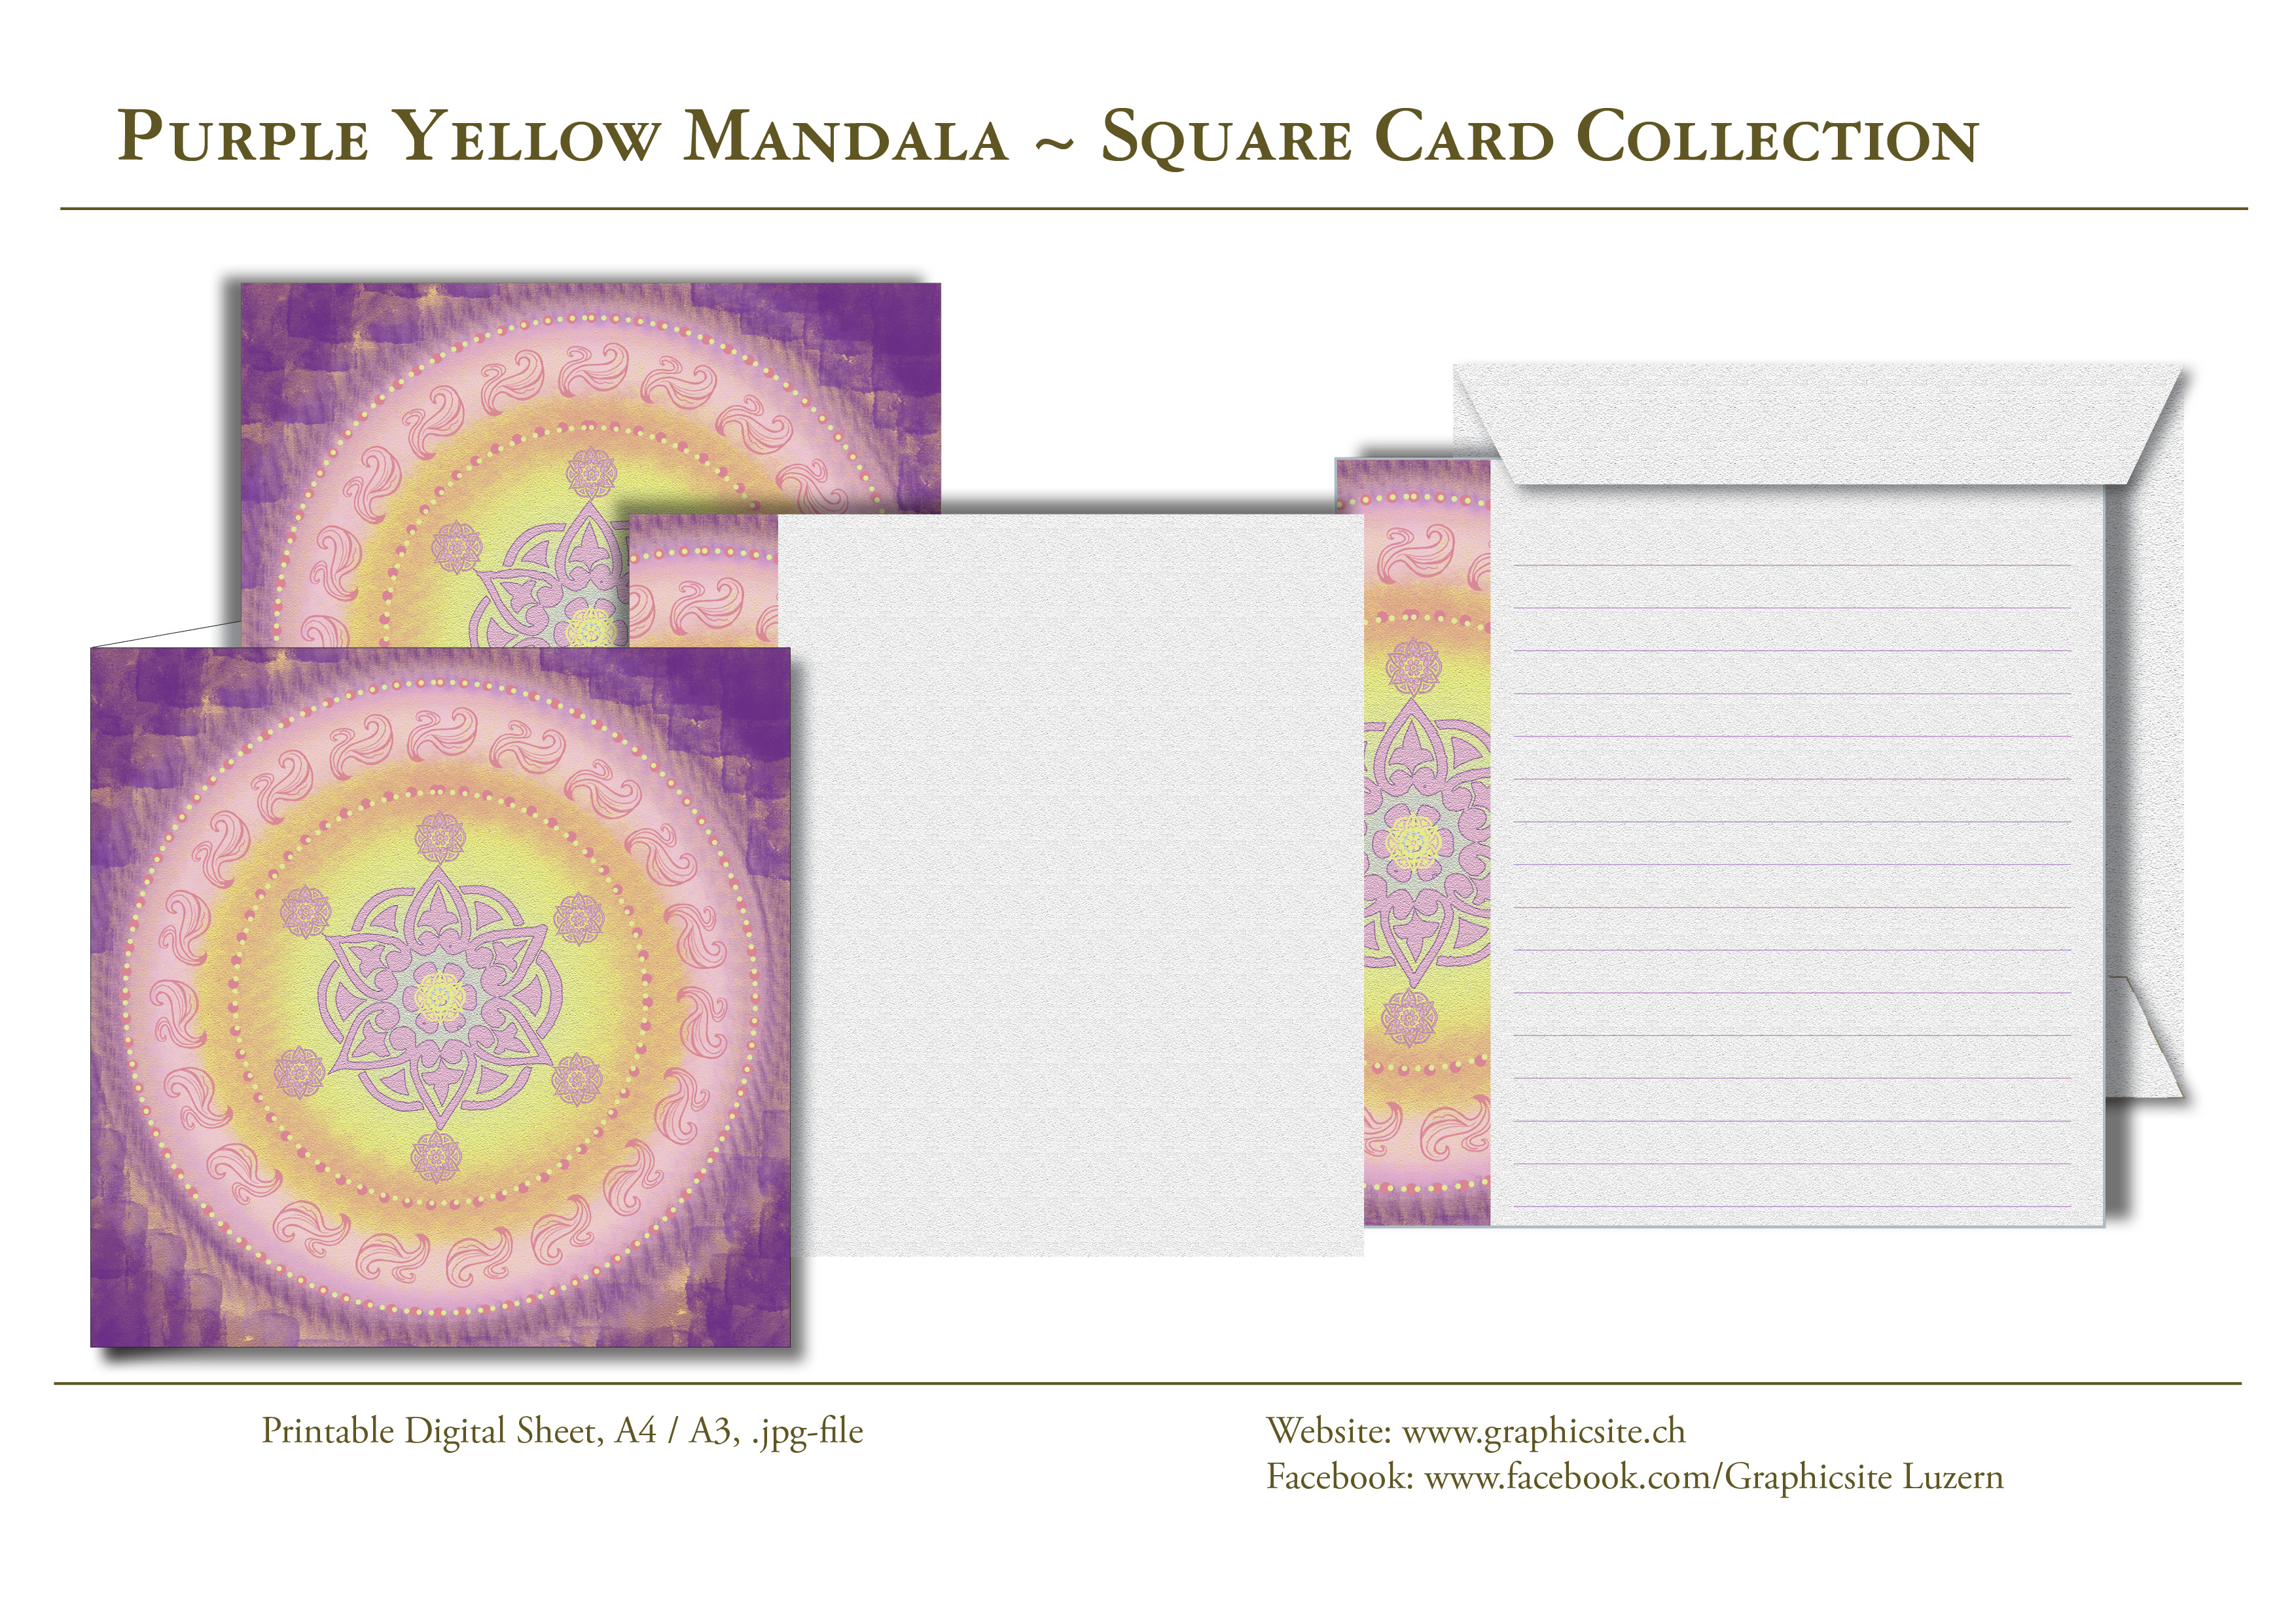 Karten selber drucken - Mandala Violett, Gelb - Karten, Grusskarten, Kuvert, Grafiker Luzern, Schweiz